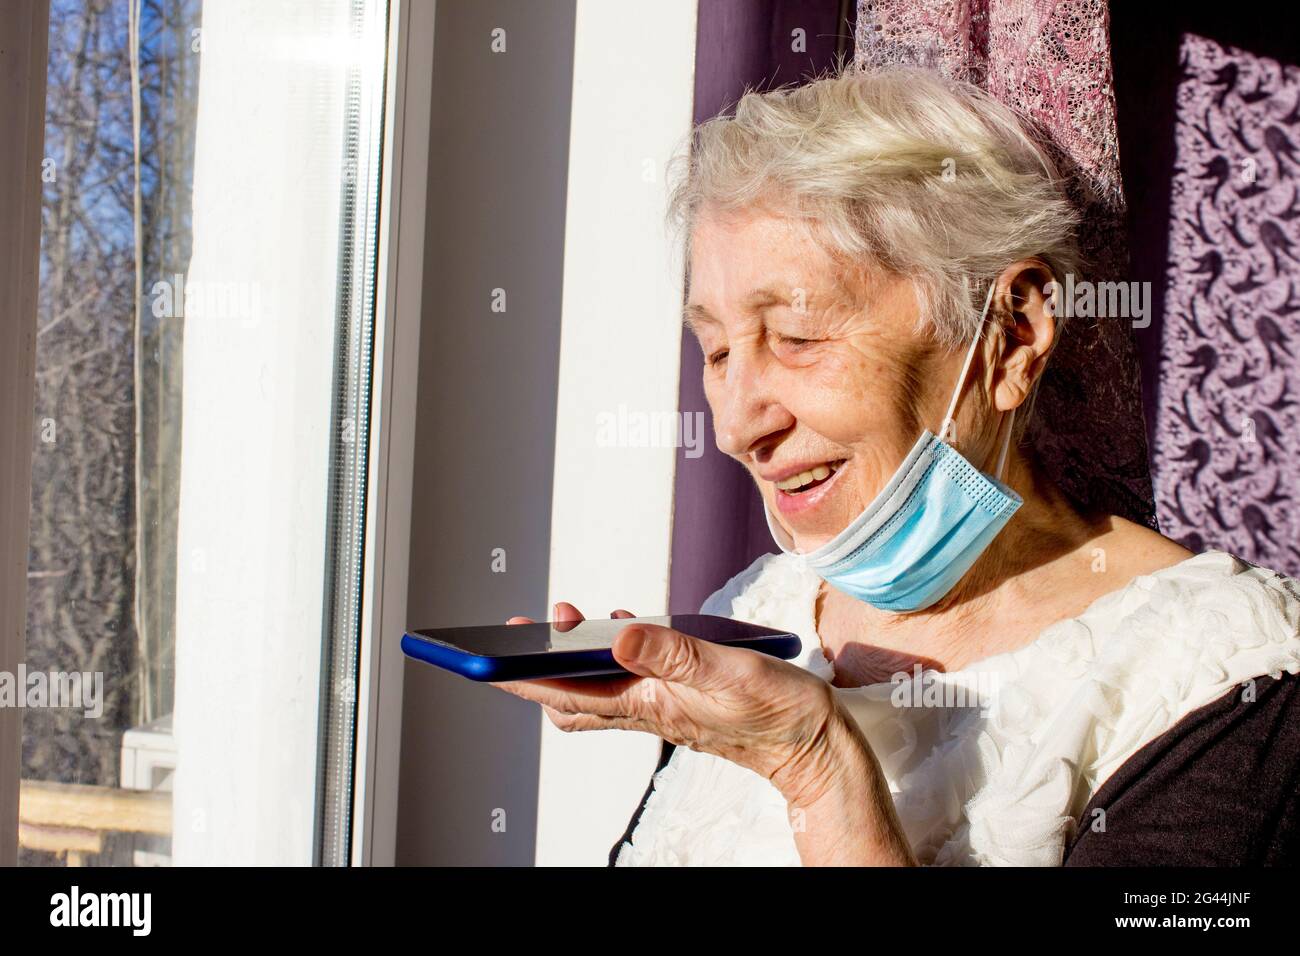 Nonna con smartphone che fa un messaggio audio sul gadget, donna matura che  usa il cellulare con assistente vocale digitale virtuale. Covid-19, salute,  pandemia - senior a casa per la protezione dal